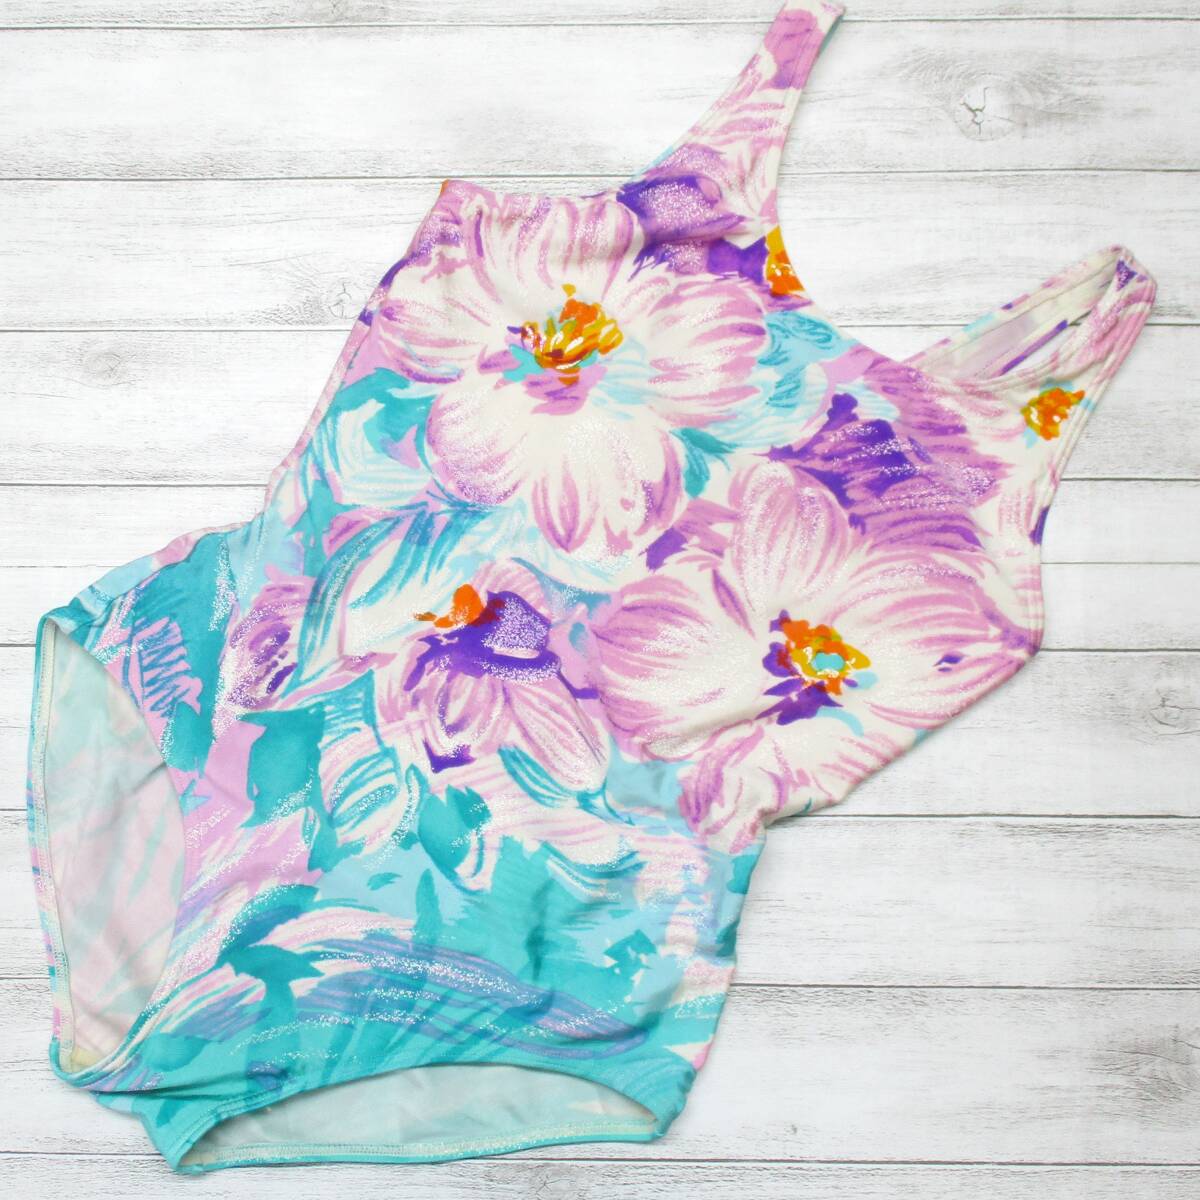 U8757* цветочный принт купальный костюм One-piece женский симпатичный розовый бледно-голубой красивый модный плавание плавание плавание Pooh рубин chi море 